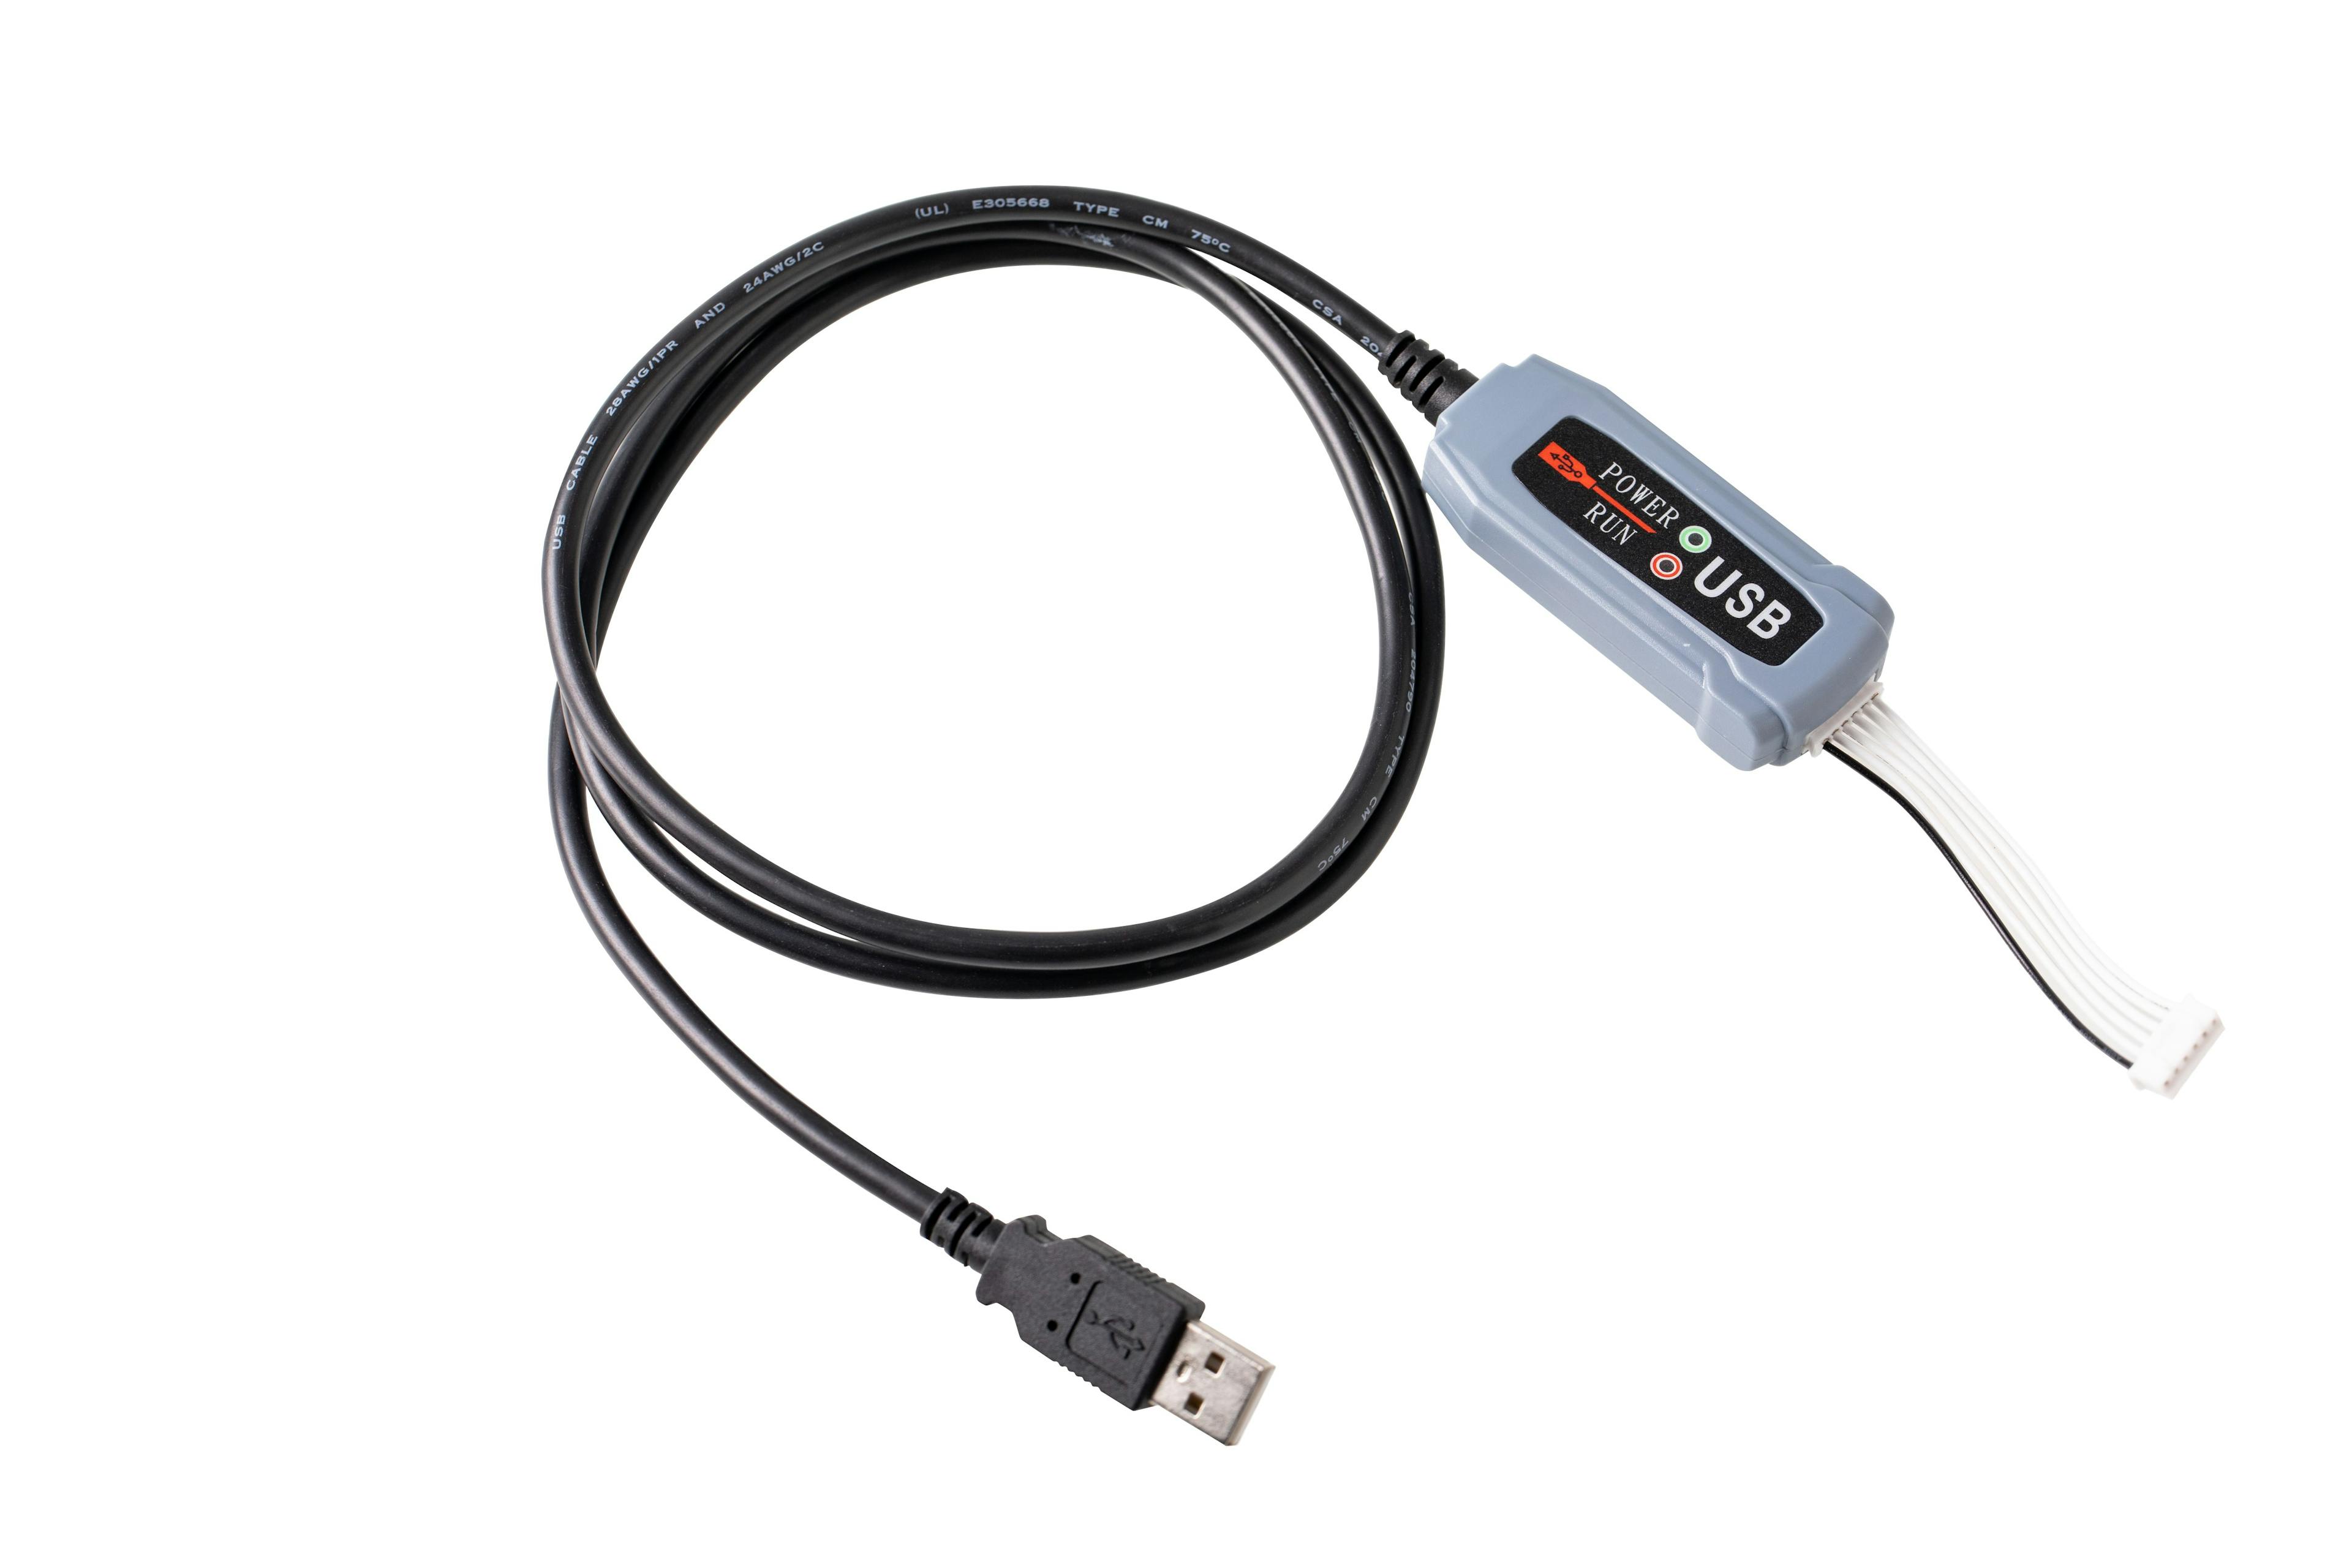 Telecrane USB Interface Cable